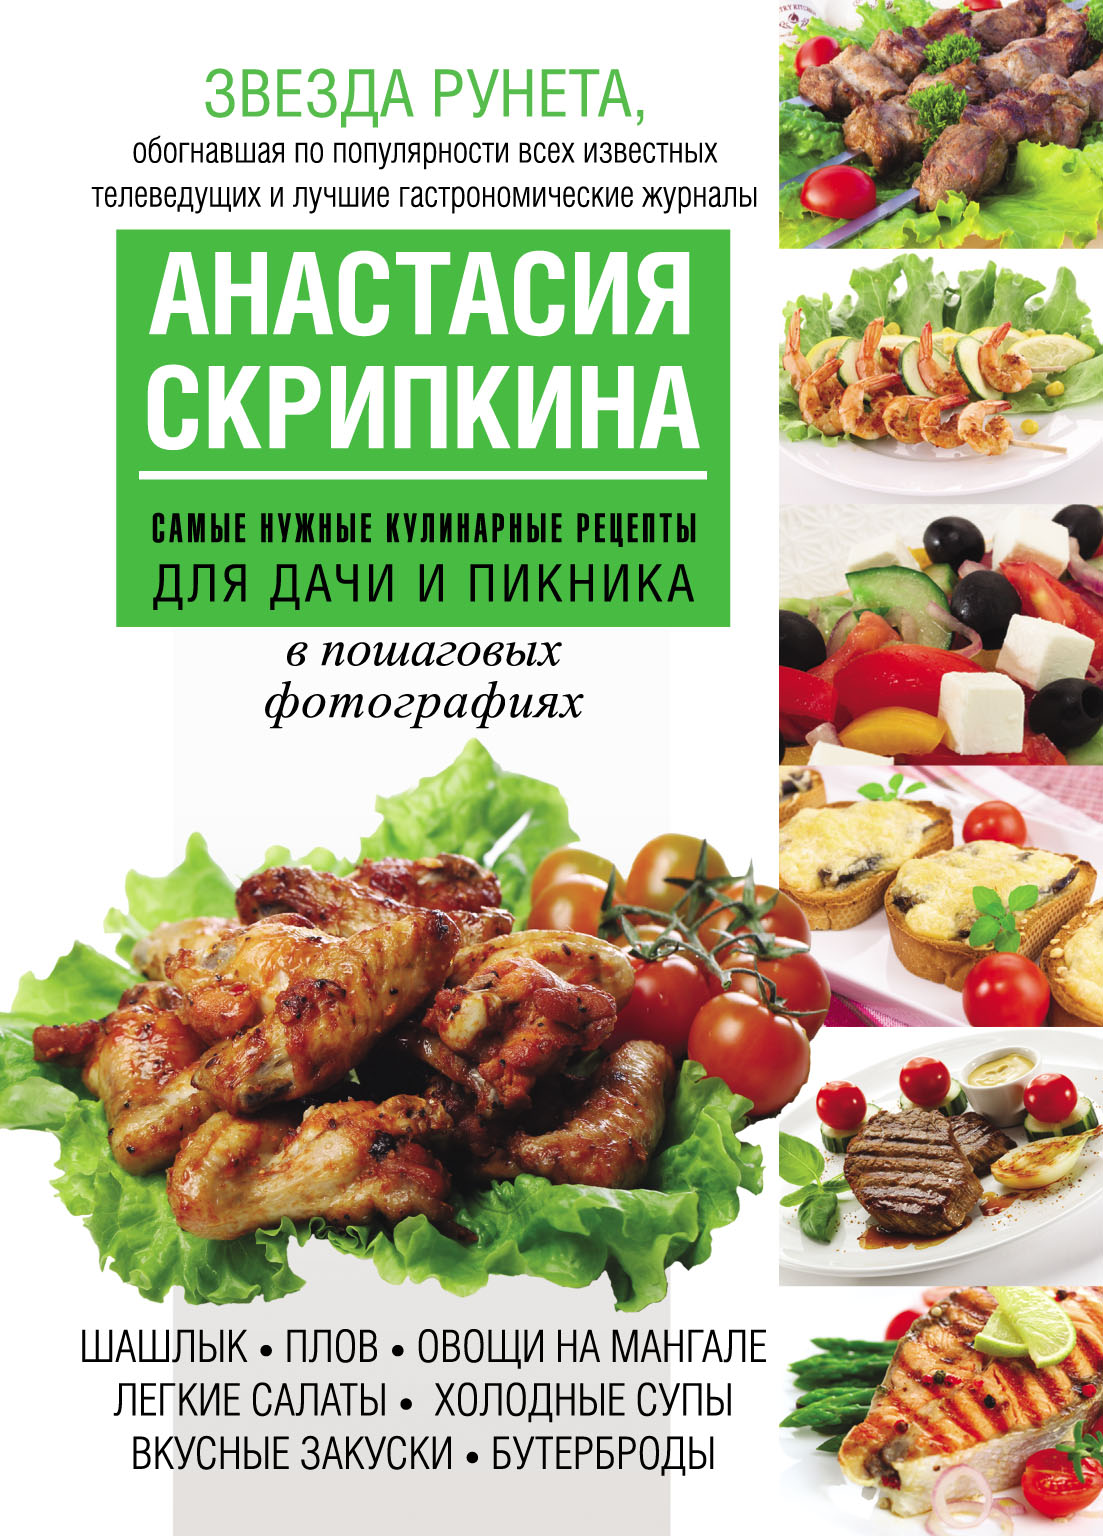 Кулинарные рецепты от Скрипкиной Анастасии | Рецепты, Кулинария, Еда